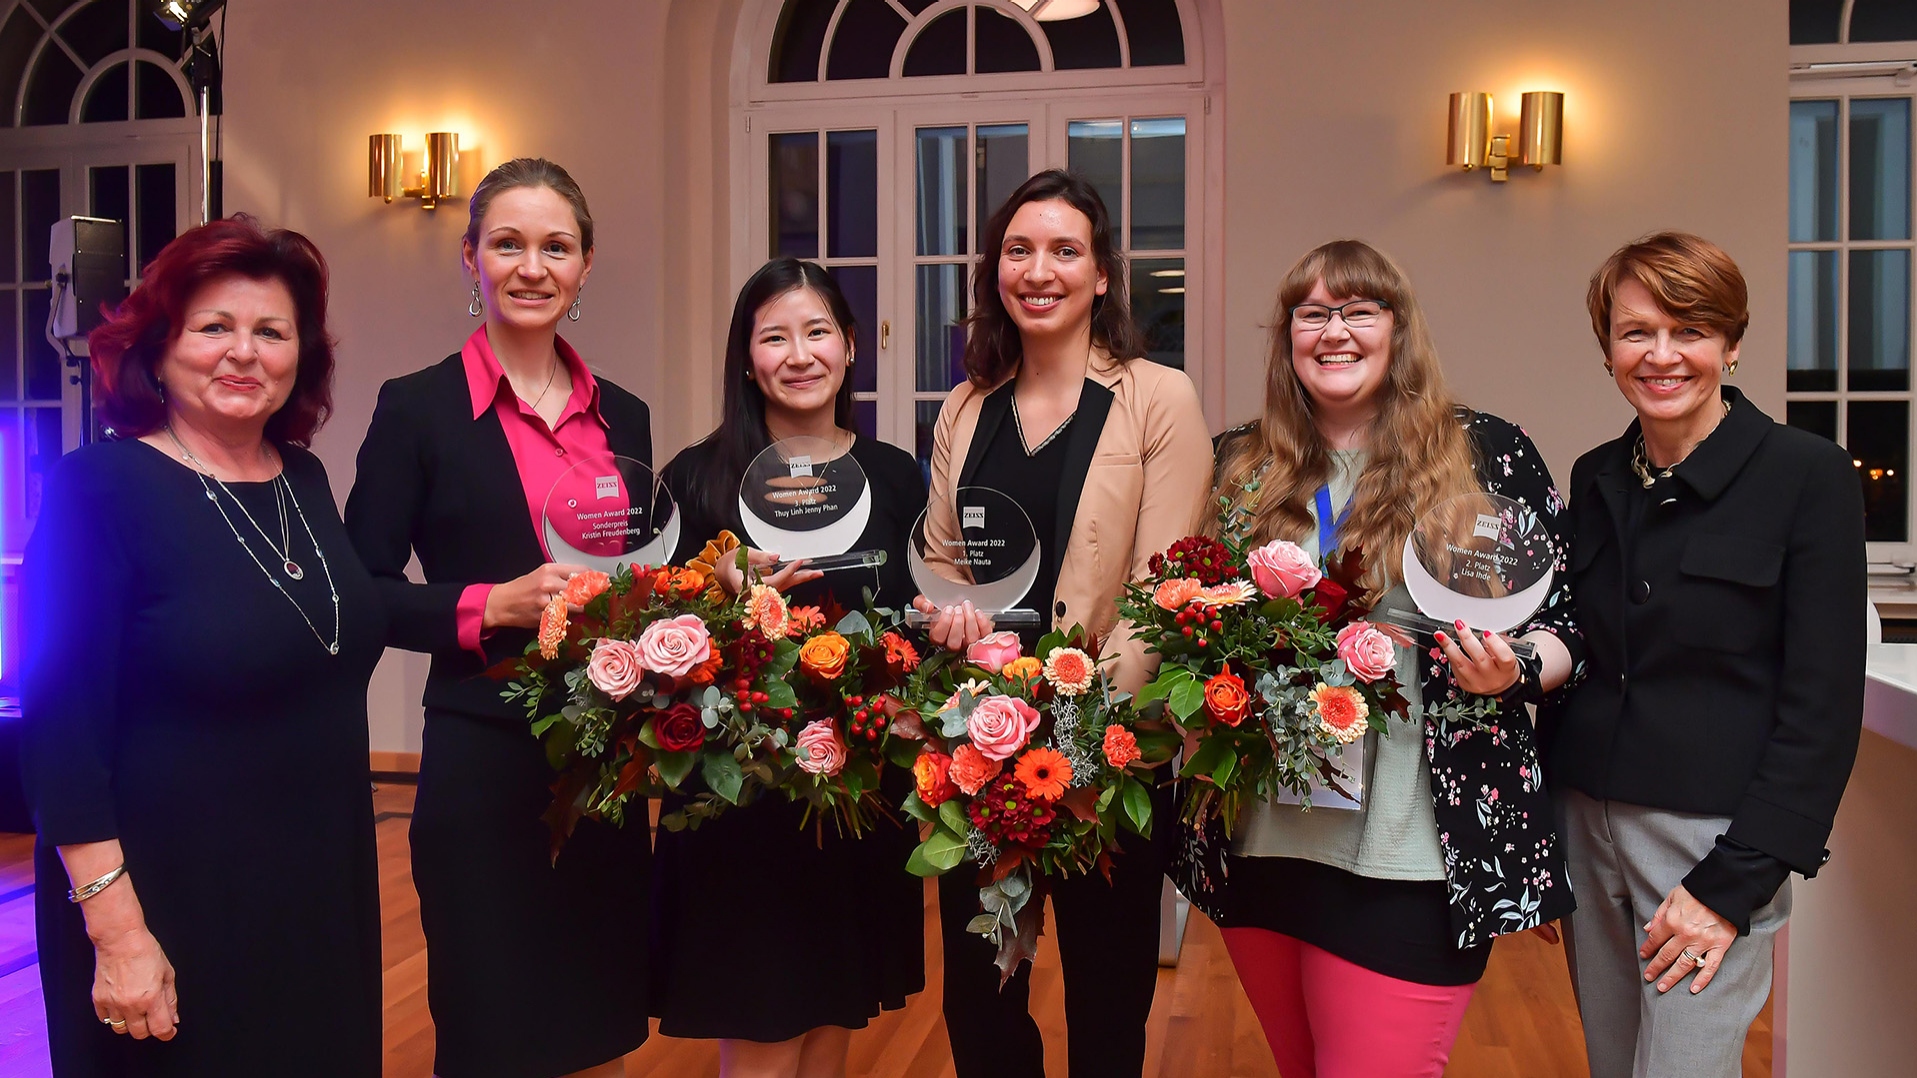 Mit dem ZEISS Women Award werden herausragende Studentinnen aus der Digital- und Informatikbranche ausgezeichnet, die kurz vor ihrem Abschluss stehen (vlnr: Viola Klein, Kristin Freudenberg, Thuy Linh Jenny Phan, Meike Nauta, Lisa Ihde, Elke Büdenbender).